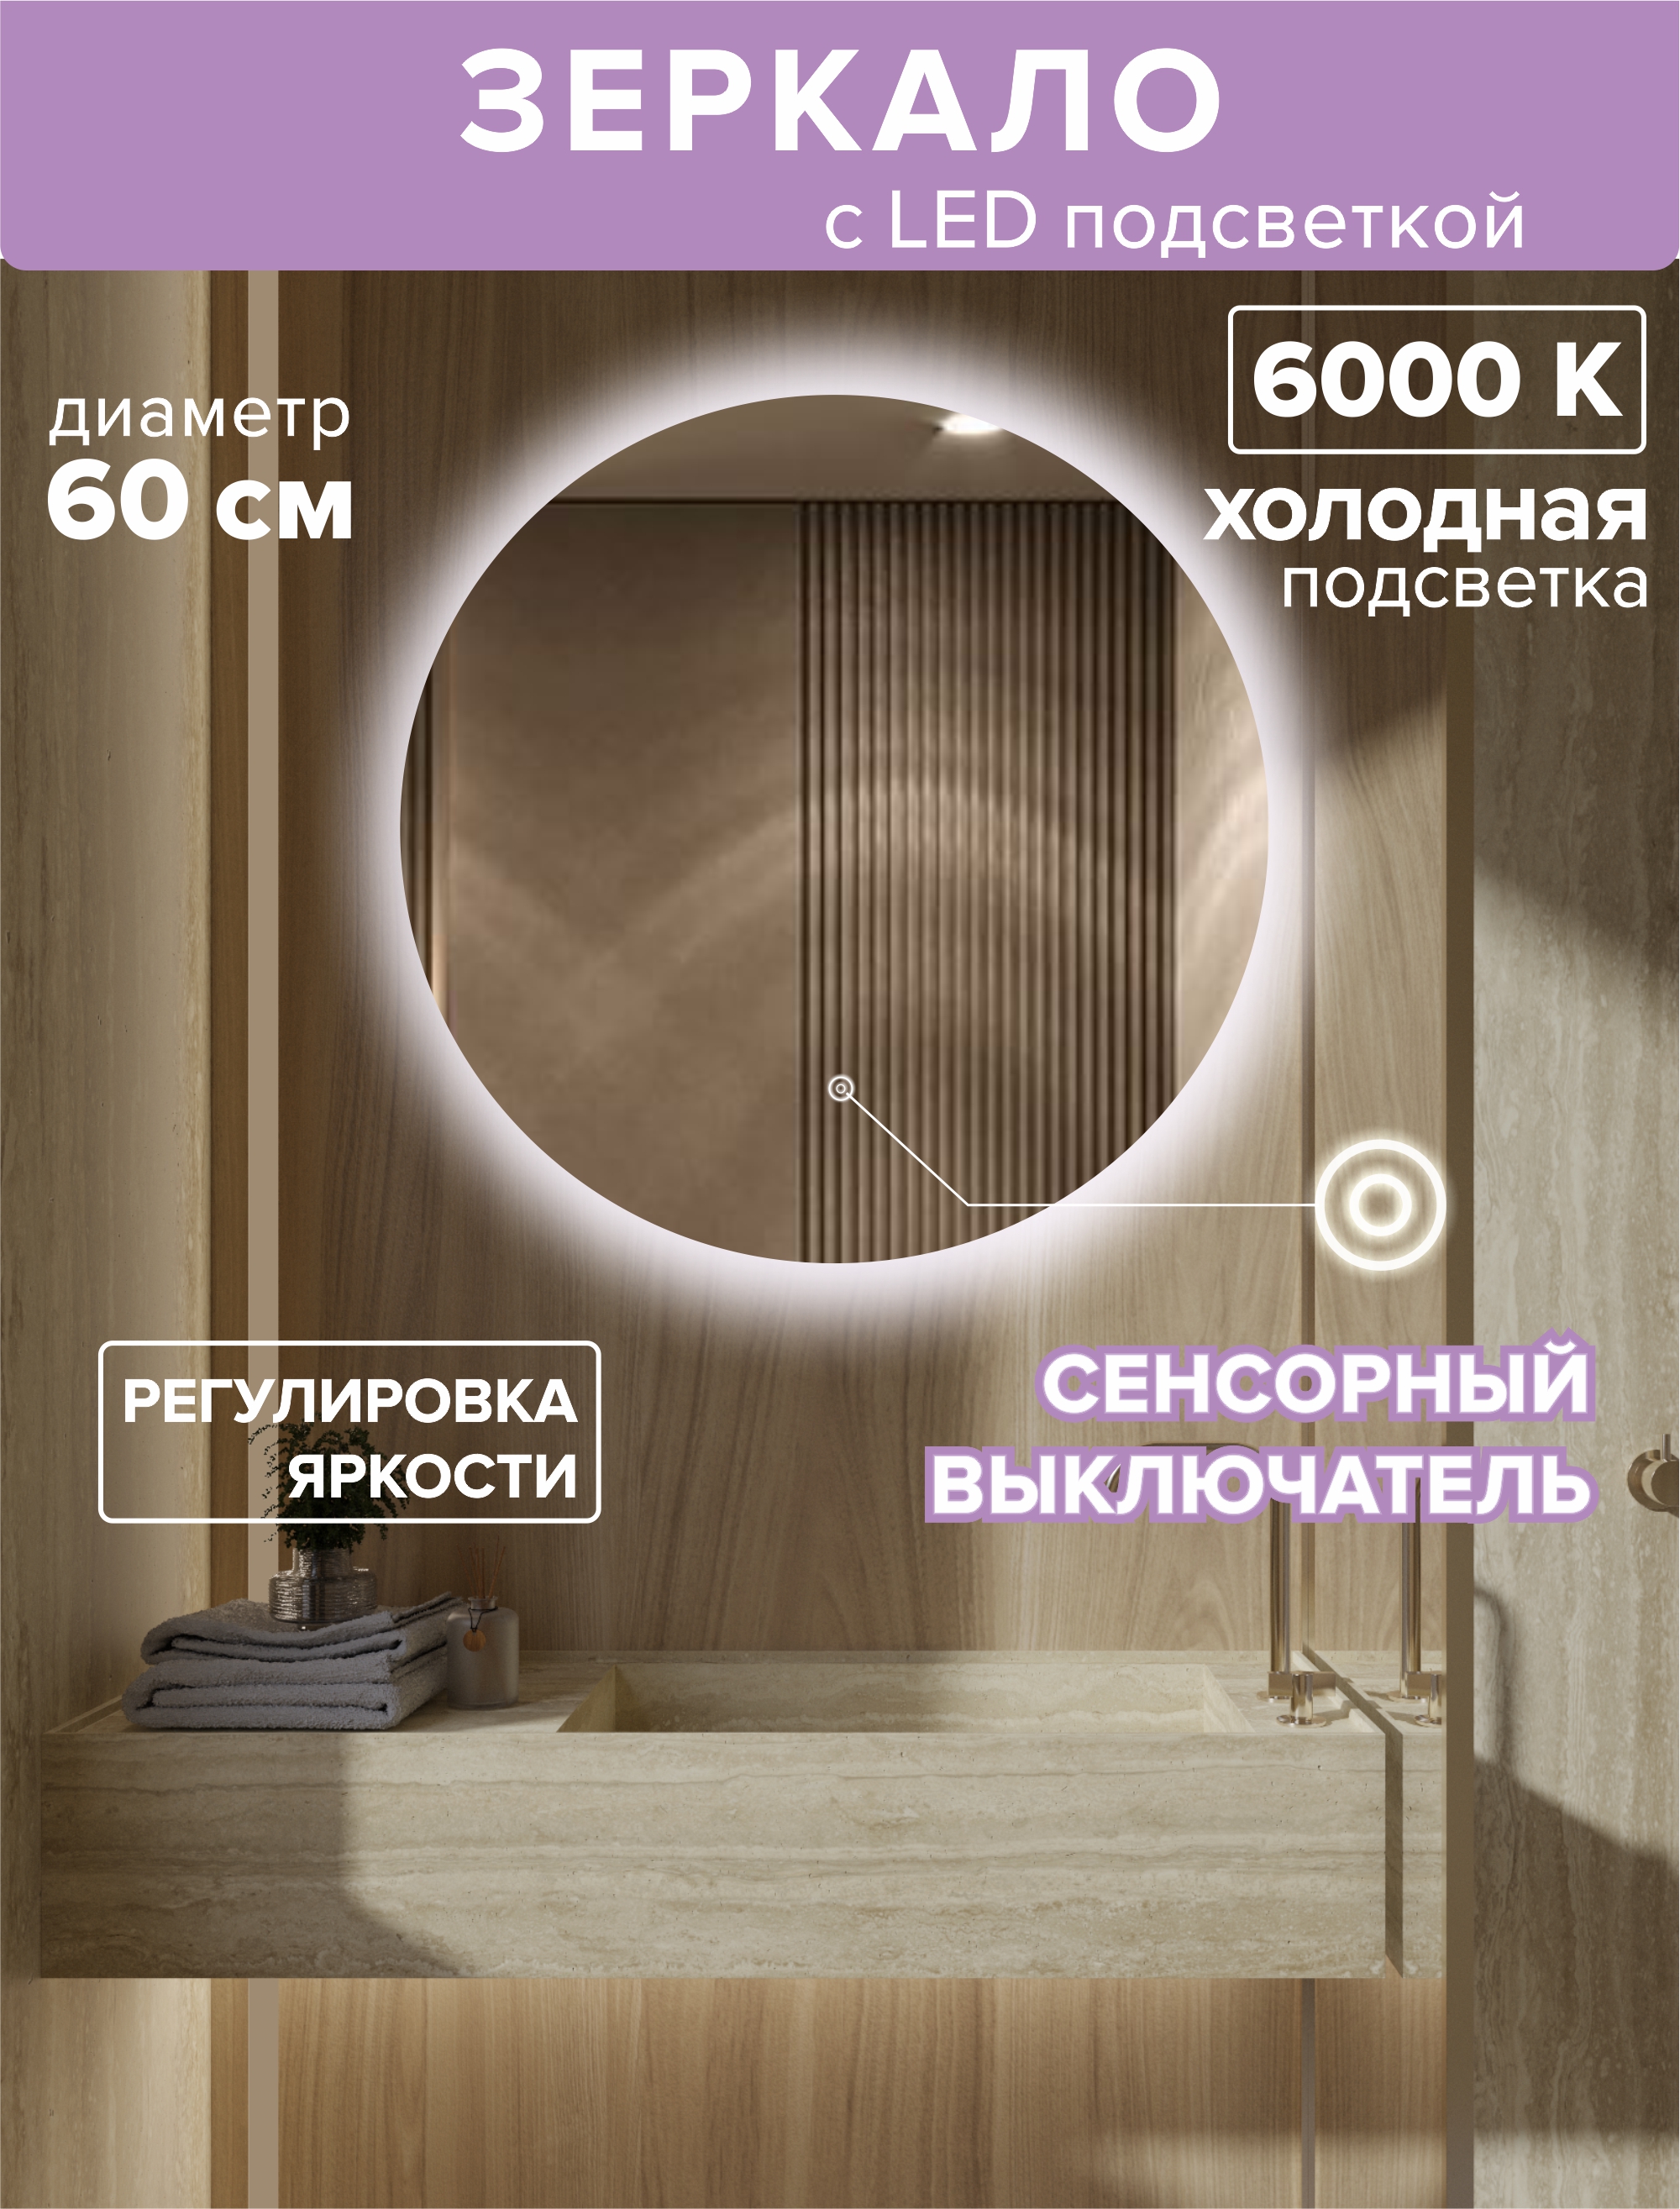 Зеркало для ванной Alfa Mirrors с холодной подсветкой 6500К круглое 60см, арт. Na-6h зеркало для ванной prisma 40 60 горизонтальное парящее с холодной led подсветкой